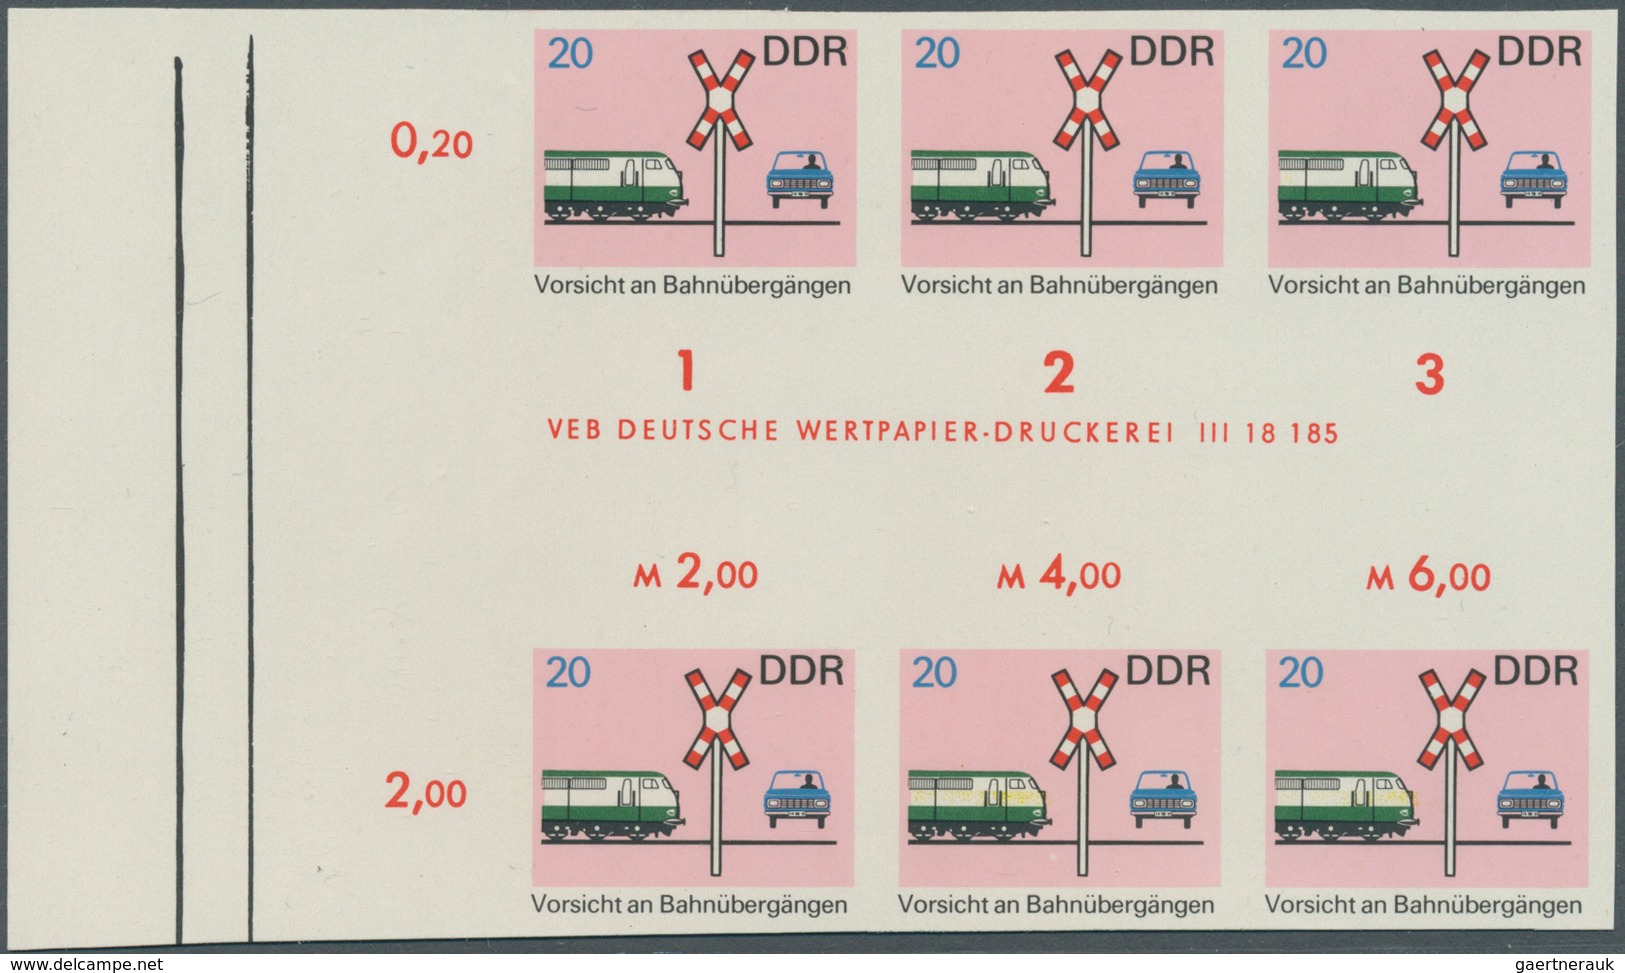 20313 DDR: 1969, Sicherheit im Straßenverkehr 20 Pf. 'Vorsicht an Bahnübergängen' in 7 verschiedenen ungez